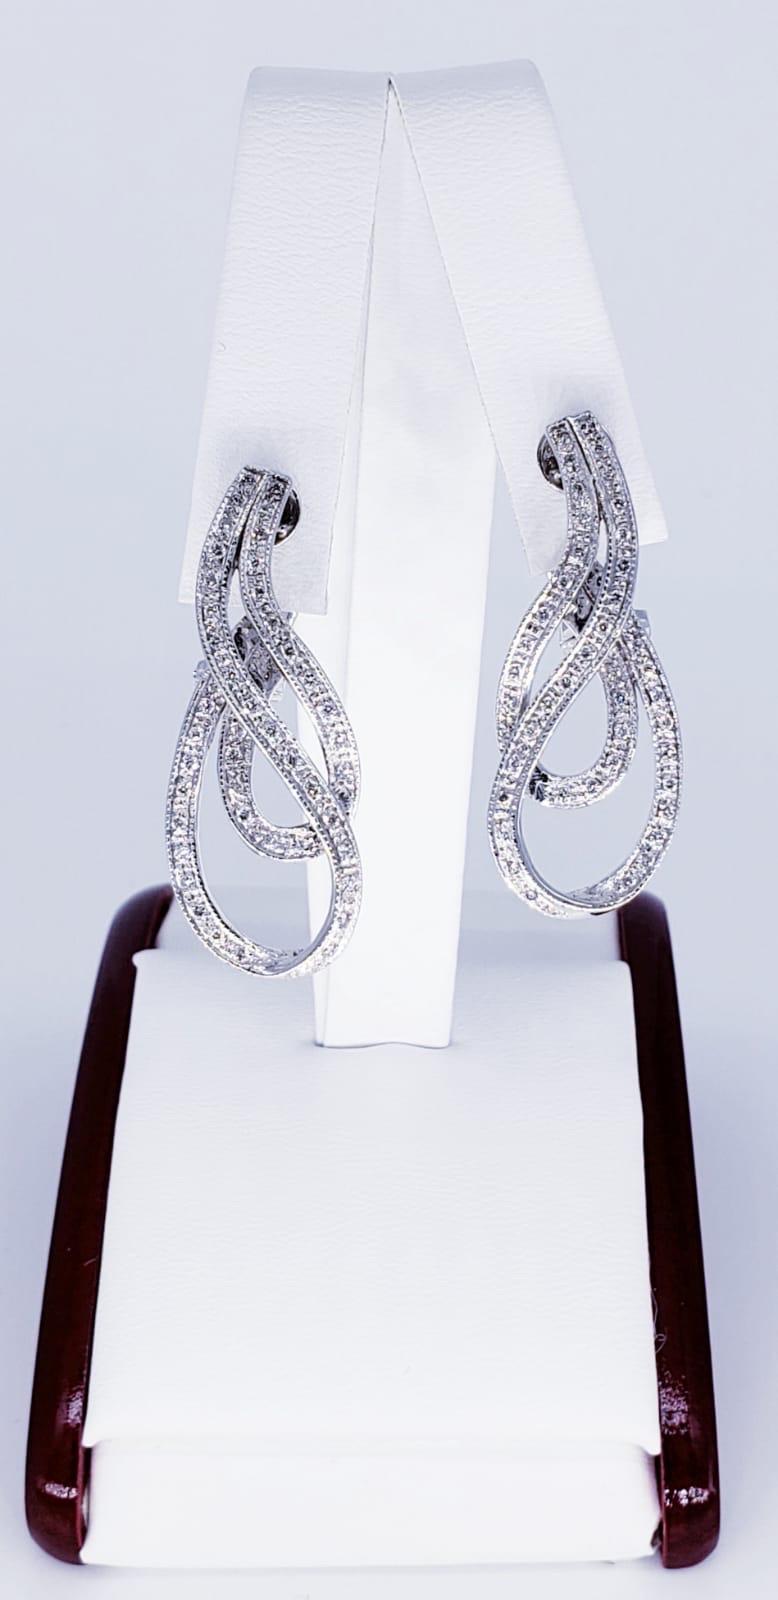 Boucles d'oreilles Art Déco en diamant de 1,20 carats. Les boucles d'oreilles ont un beau design pivotant qui les fait ressortir avec les diamants brillants pesant approximativement au total 1,20 carats. Les boucles d'oreilles sont fabriquées en or